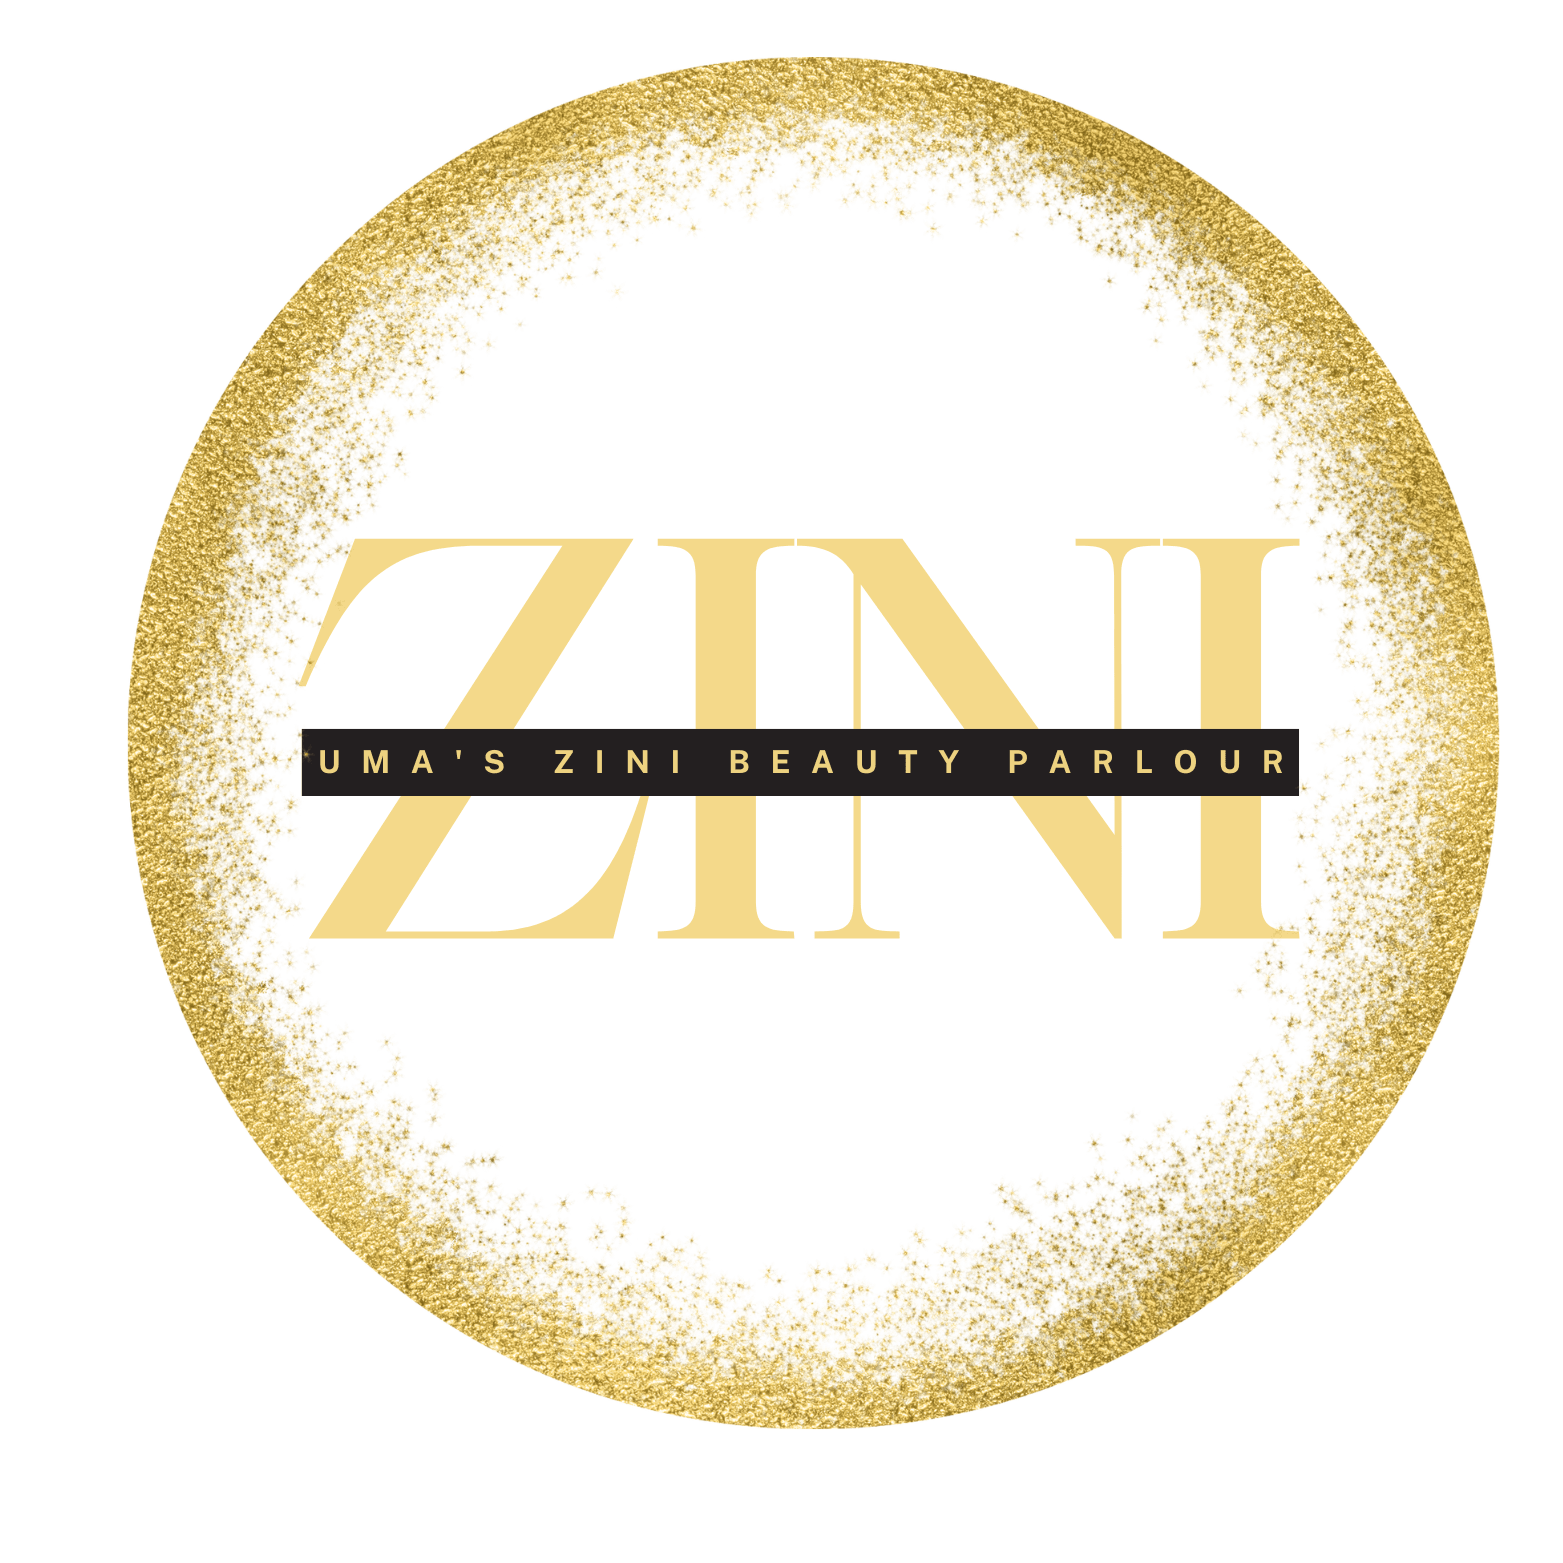 ZINI Beauty Parlour